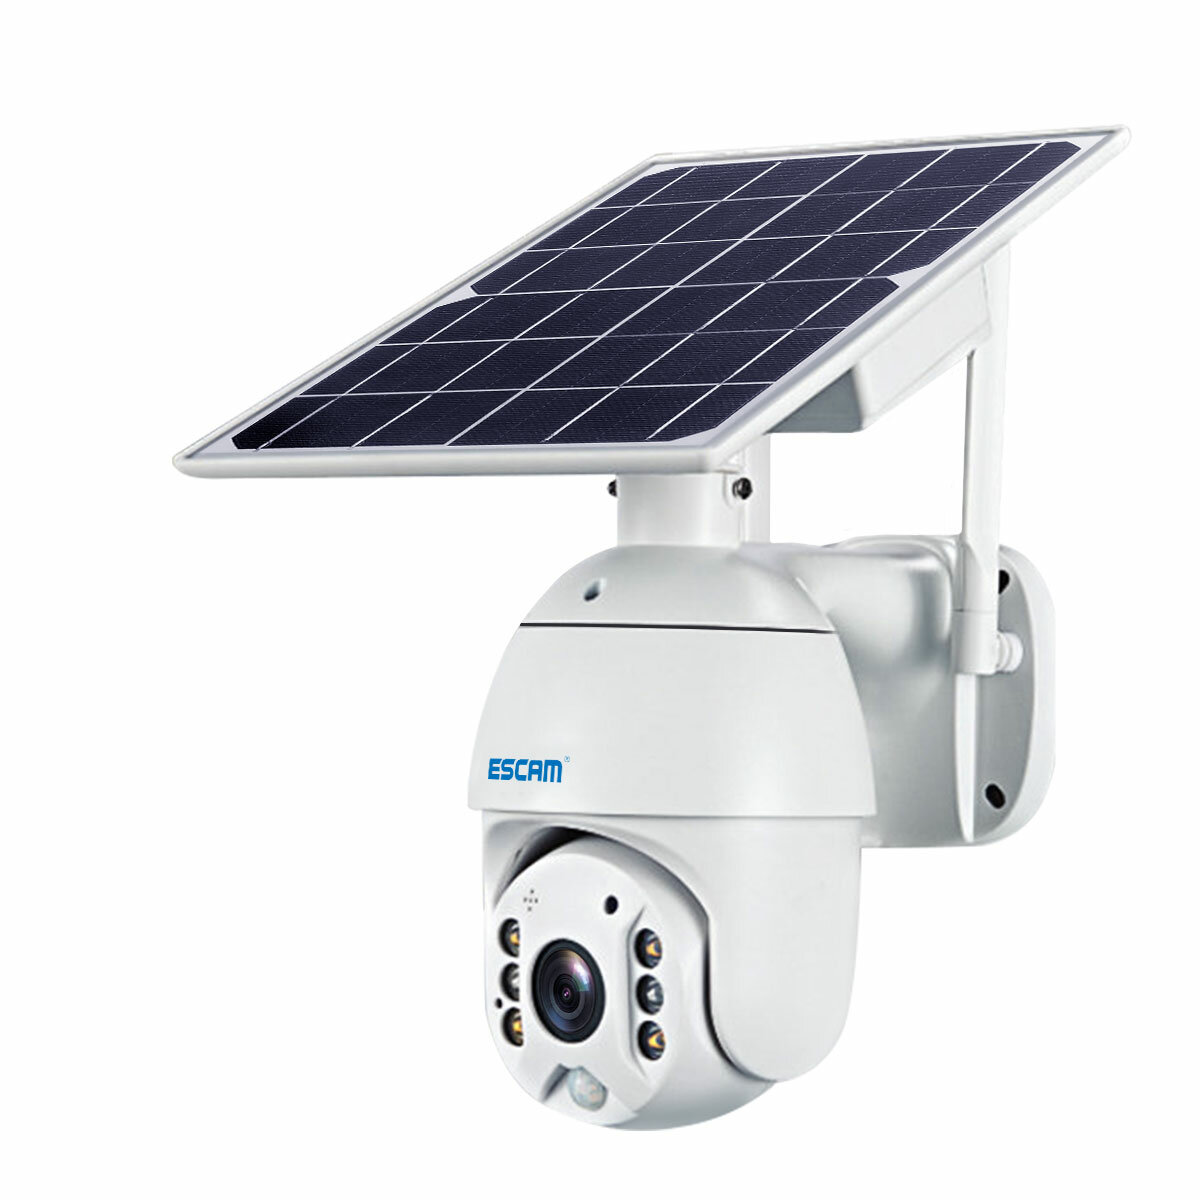 Kamera IP z panelem solarnym ESCAM QF280 1080P z EU za $82.79 / ~394zł